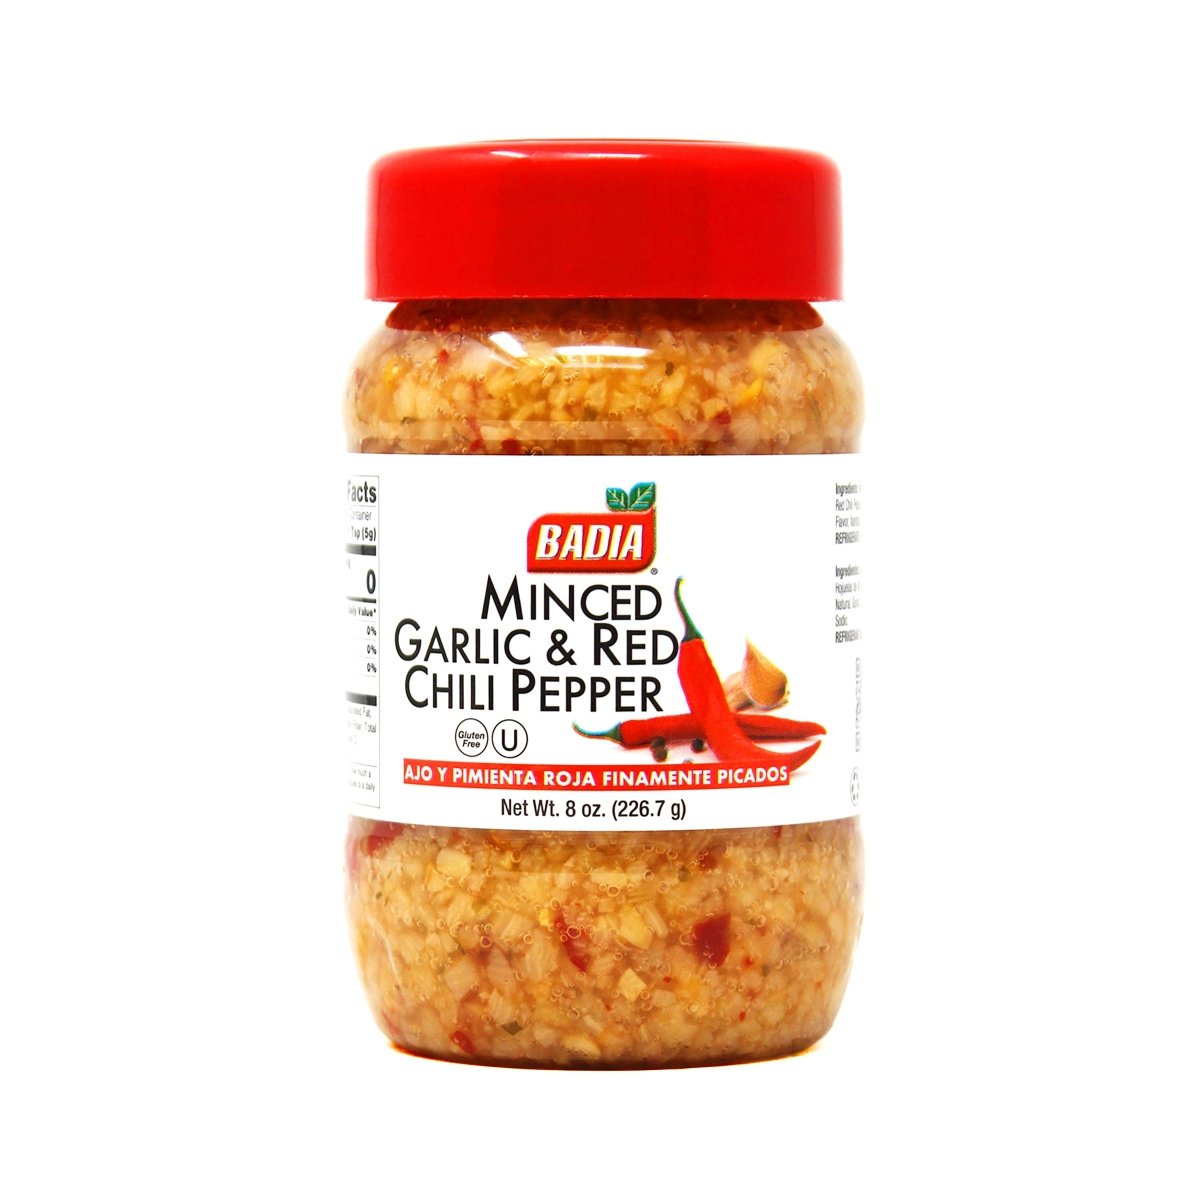 Badia Minced Garlic Red Chili Pepper 8oz - Texas Star Grill Shop 235